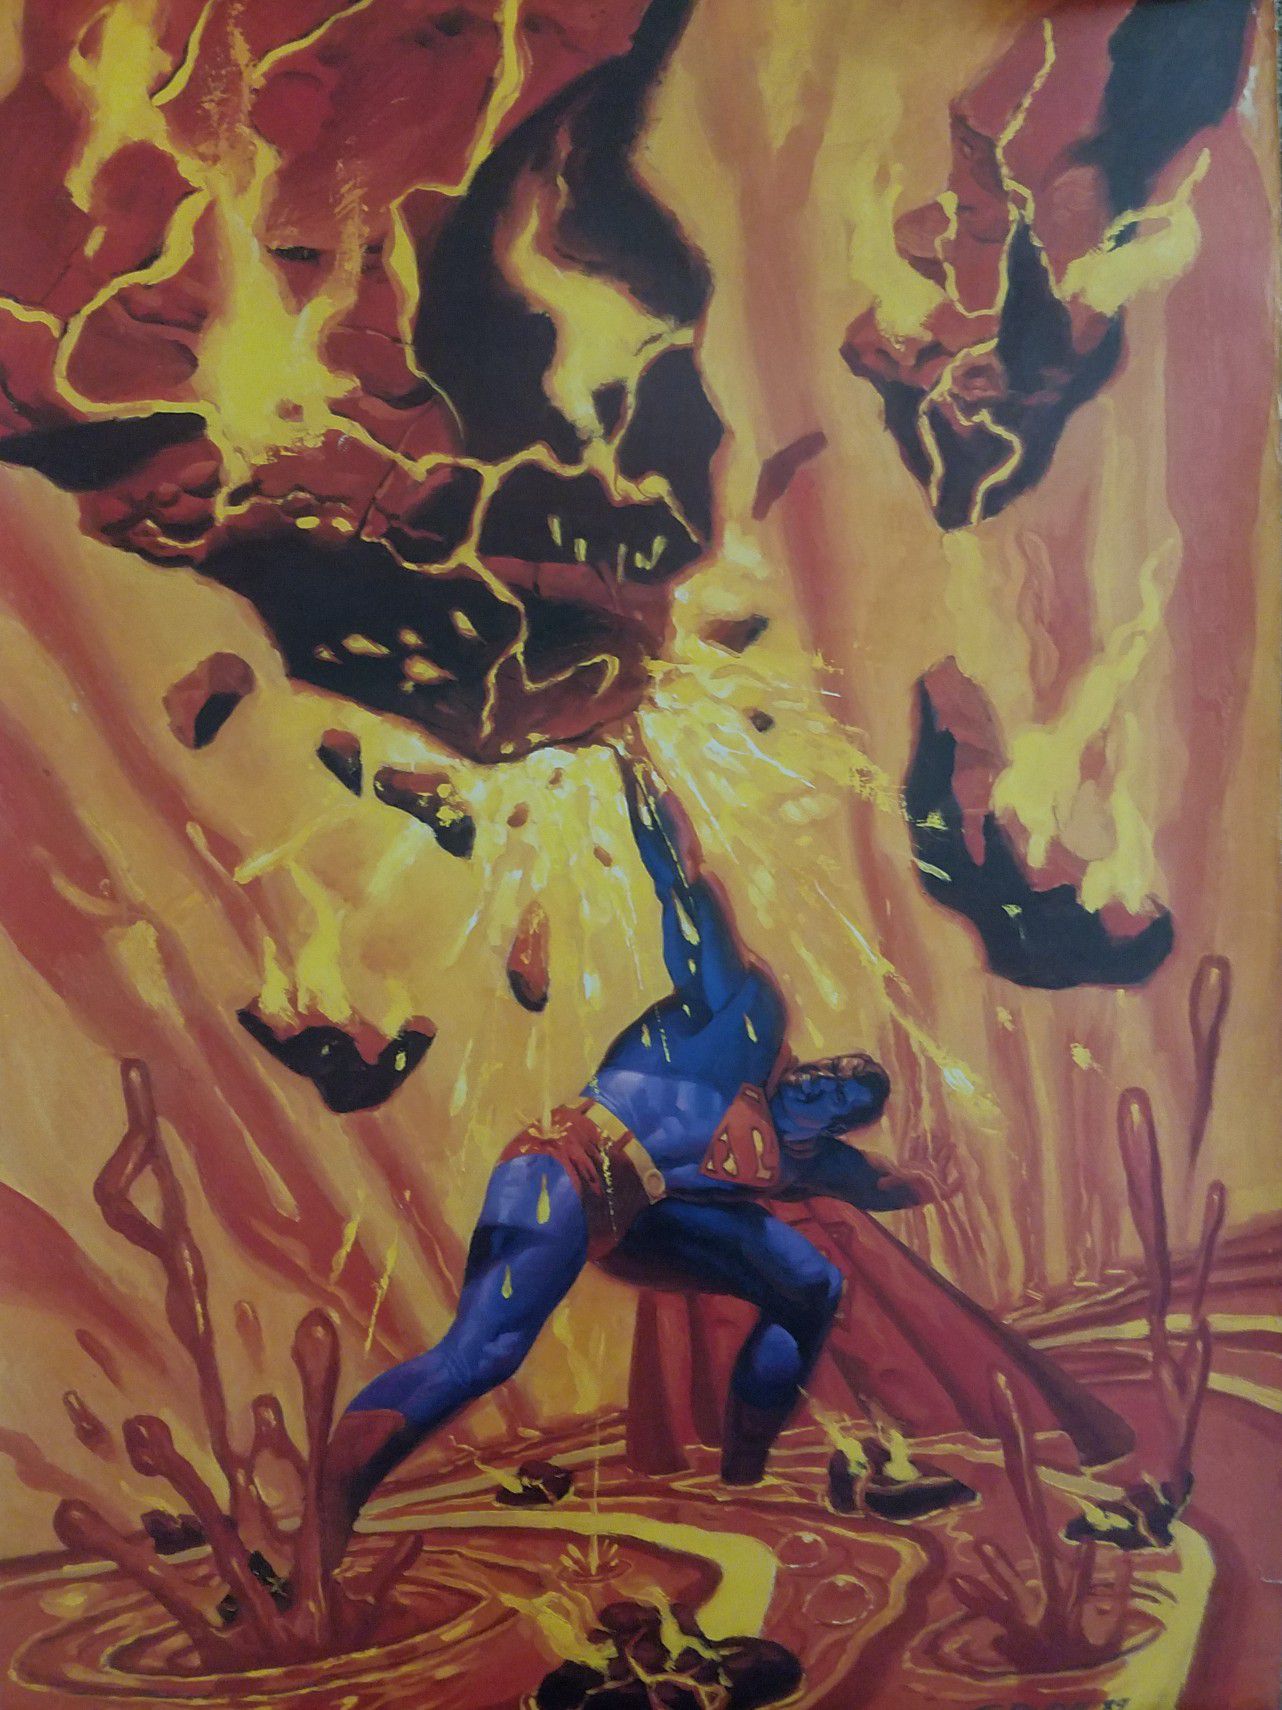 1989 Superman Poster Steve Rude Lava Volcano Rare 24 3/4" x 35"